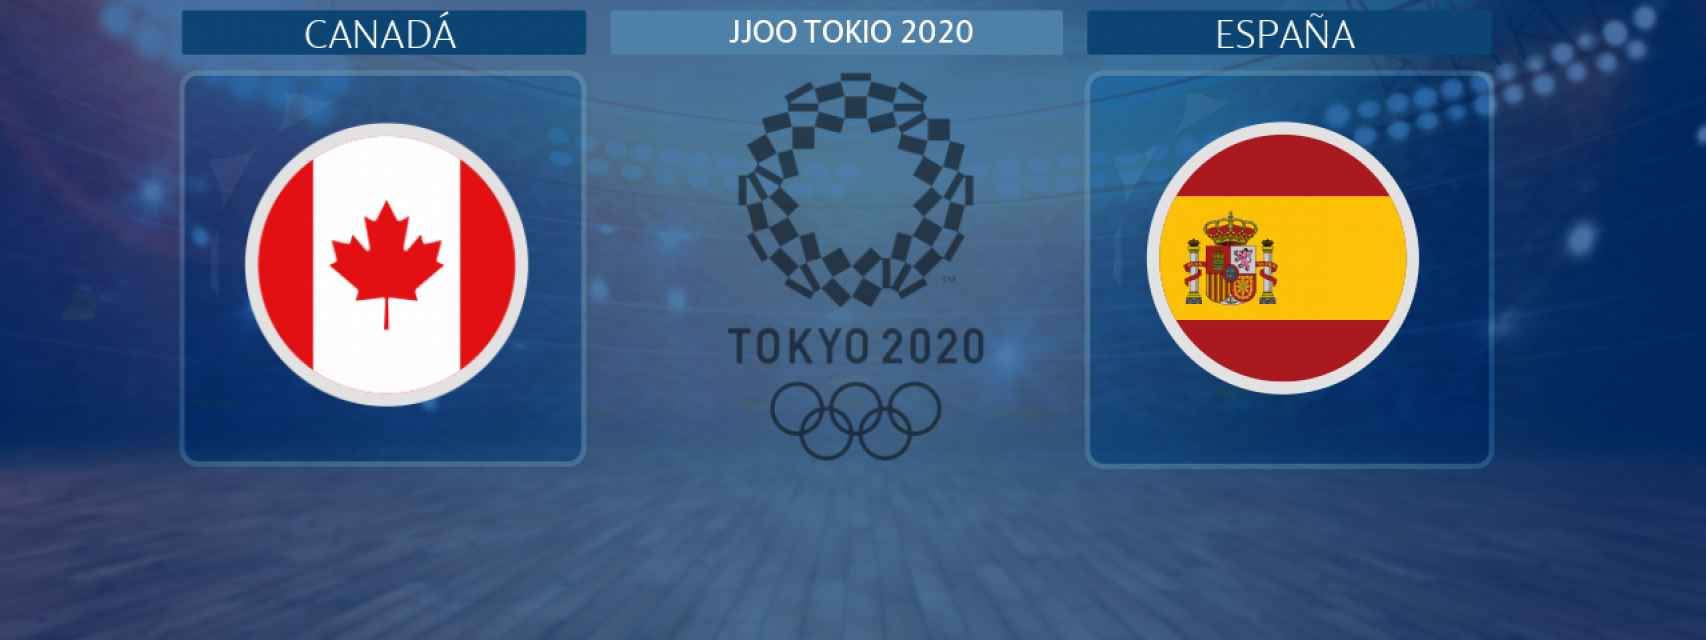 Canadá - España, partido de baloncesto femenino de los JJOO Tokio 2020